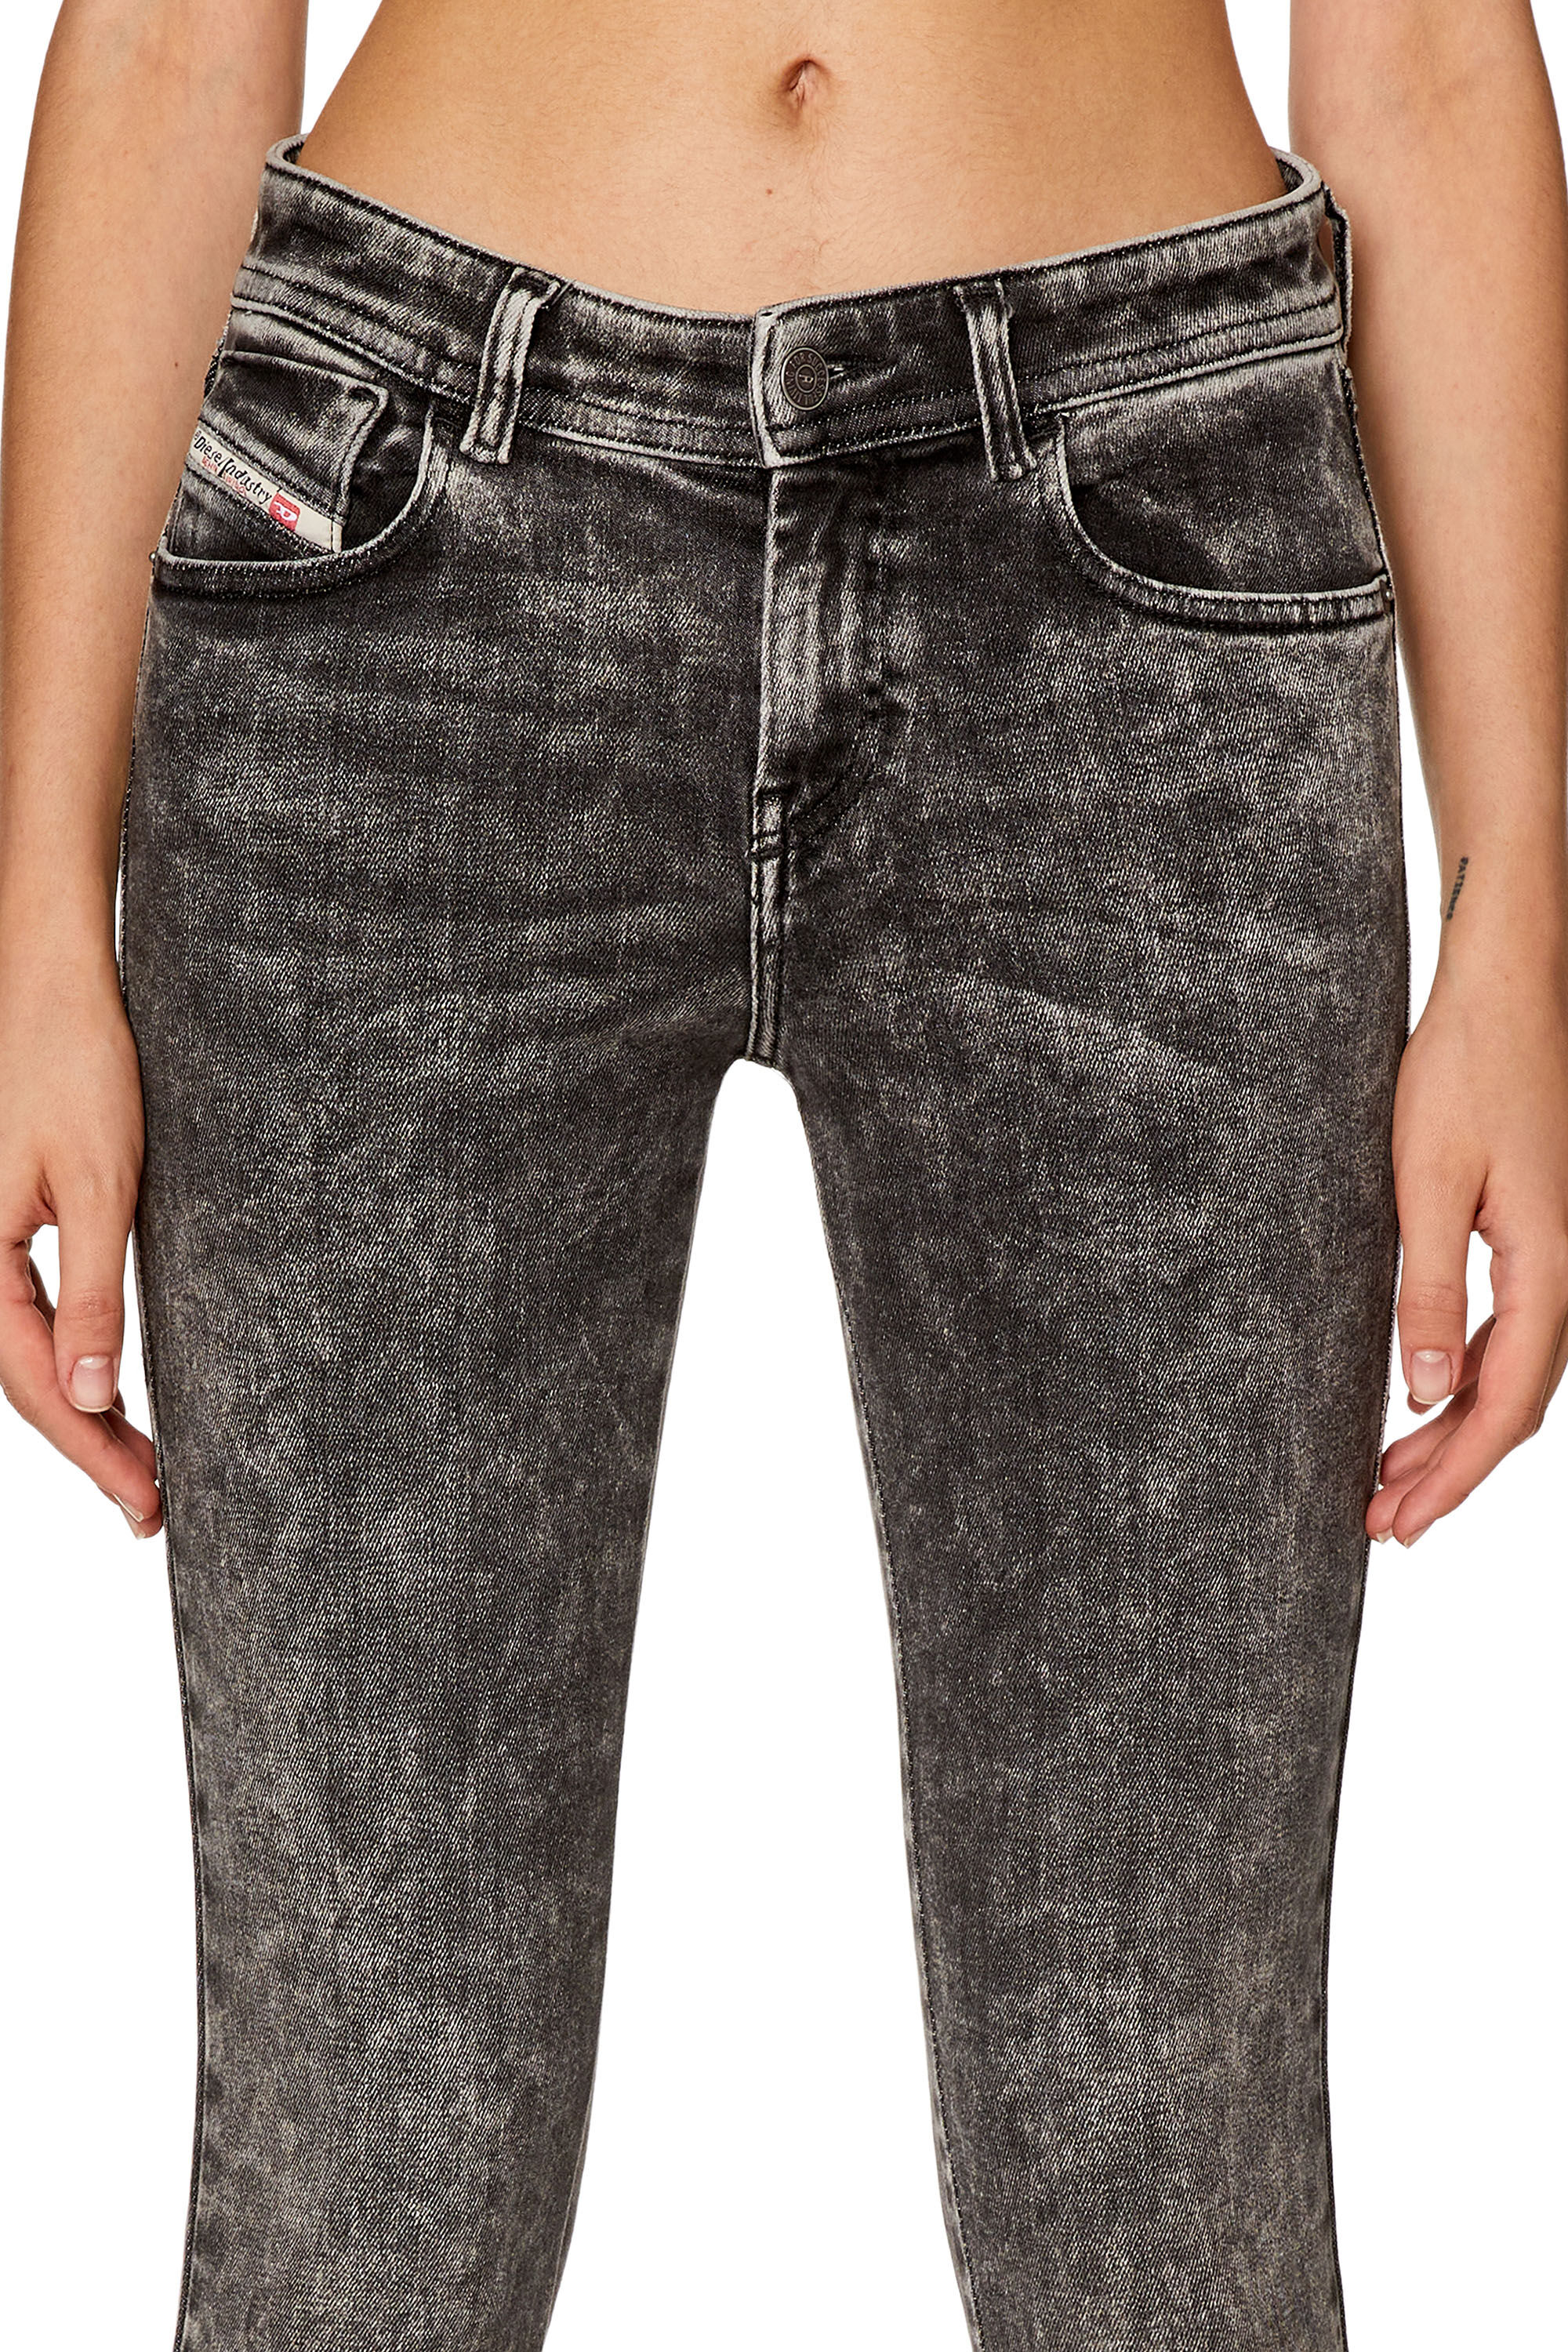 Diesel - Super skinny Jeans 2017 Slandy 09F80, Black/Dark grey - Image 5